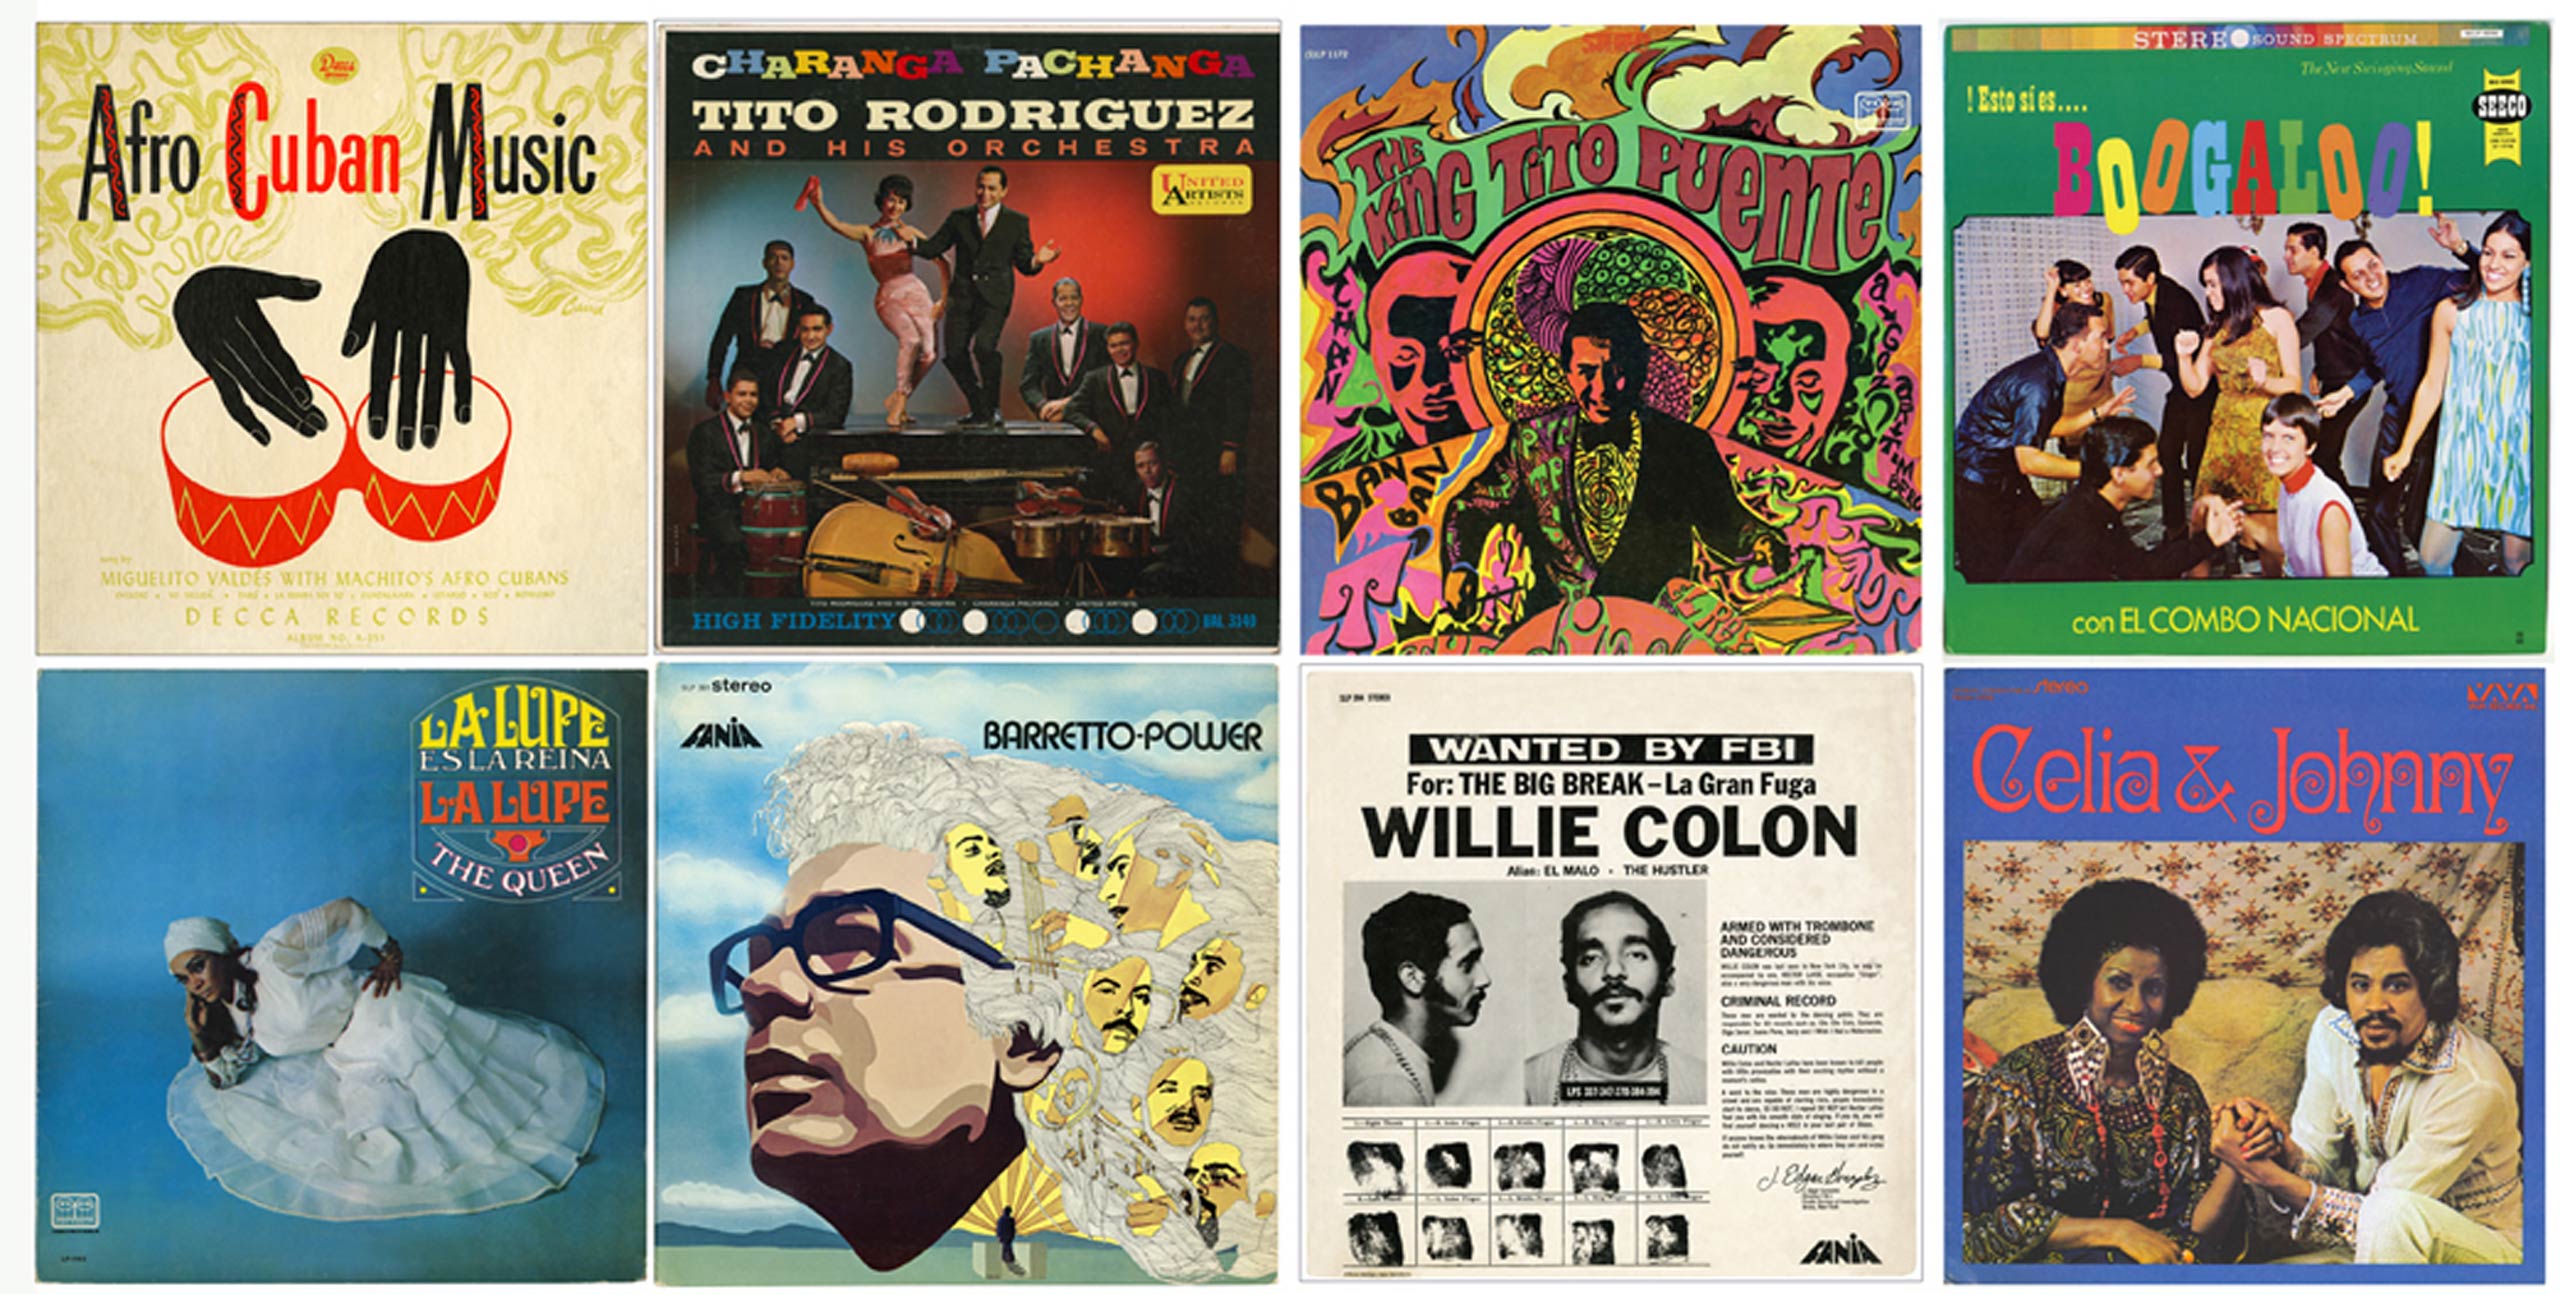 Les couvertures de huit albums de musique de salsa populaires disposés dans une grille